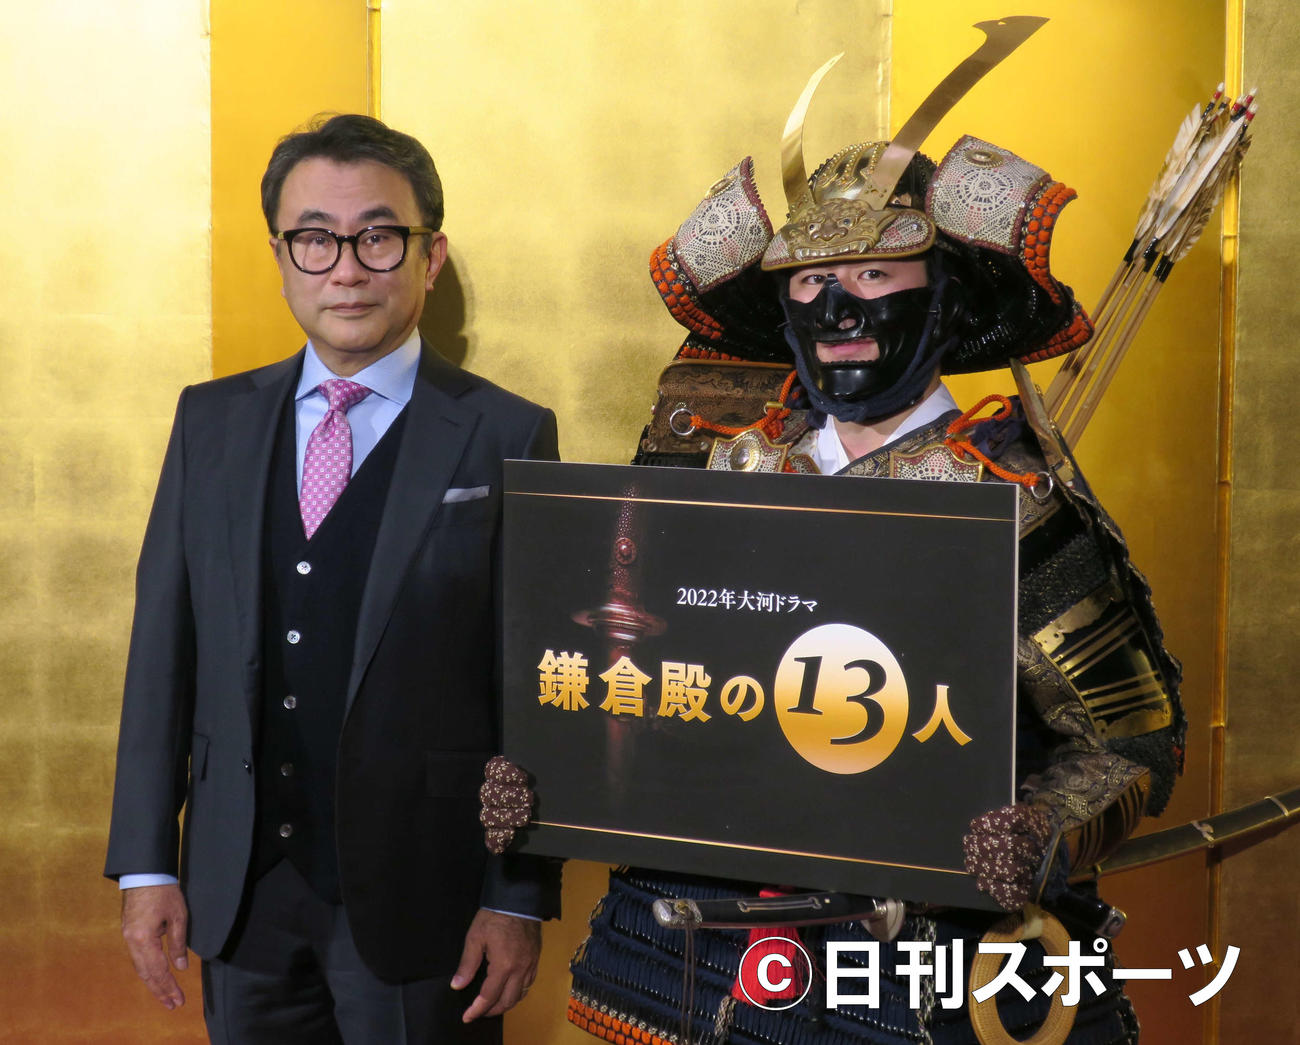 20年1月15日、大河ドラマ「鎌倉殿の13人」の発表会見を行った脚本家三谷幸喜氏